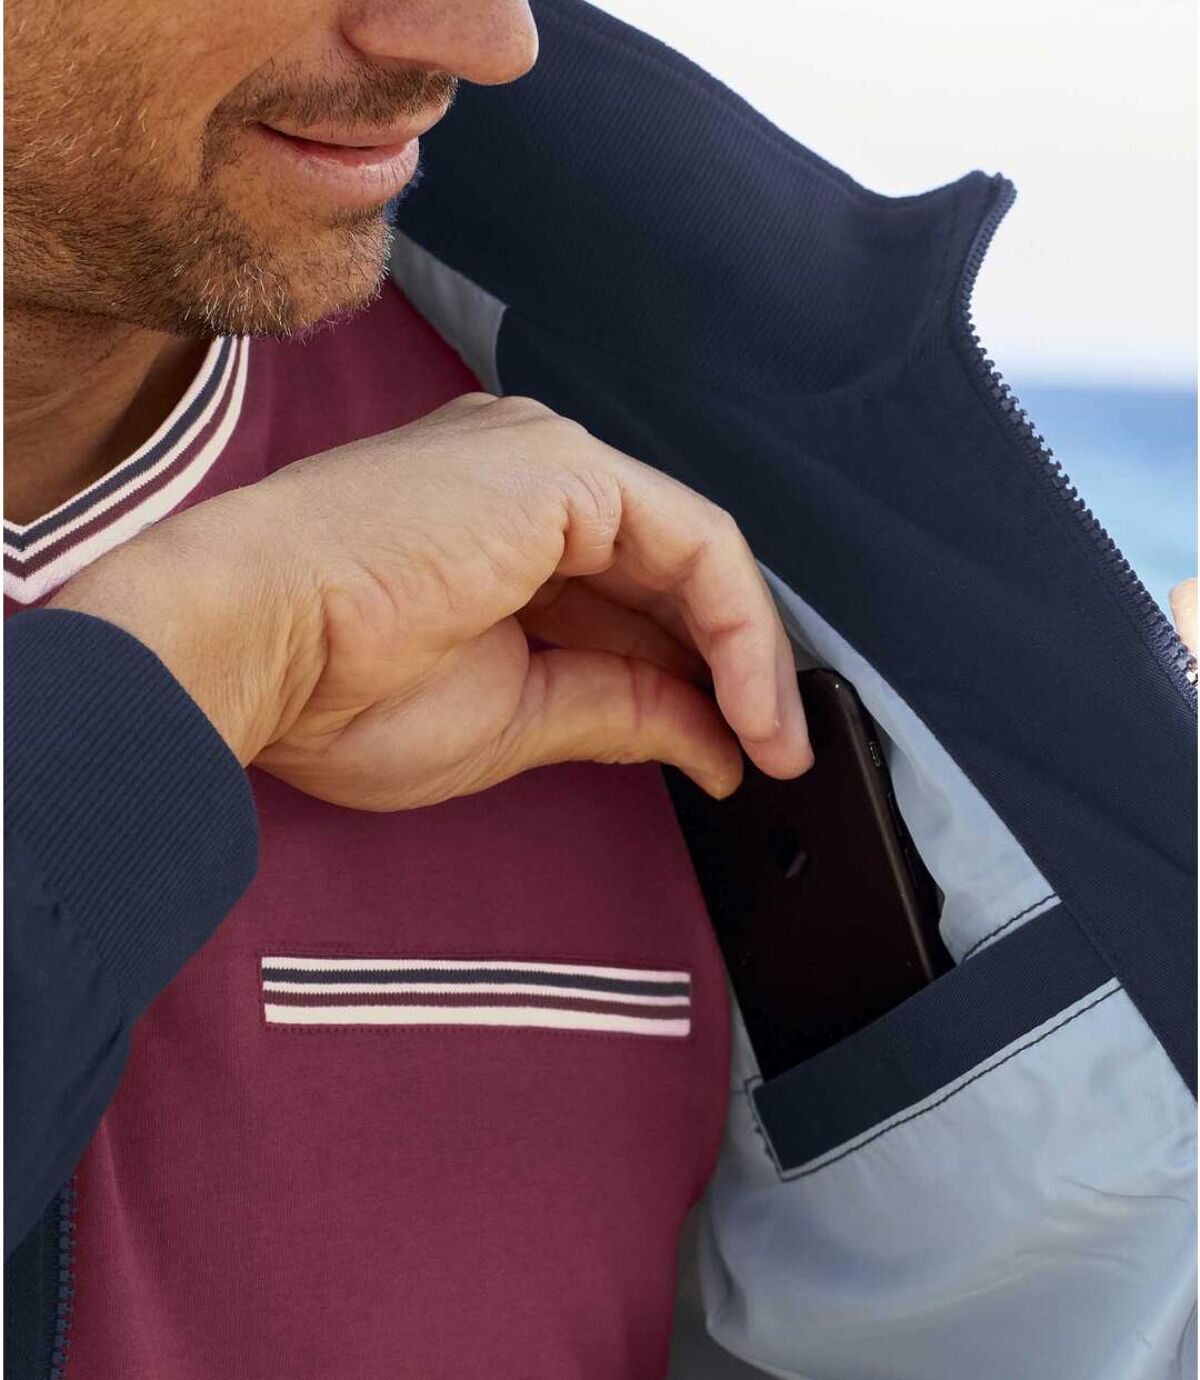 Men's Navy Water-Repellent Summer Jacket - Full Zip Atlas For Men